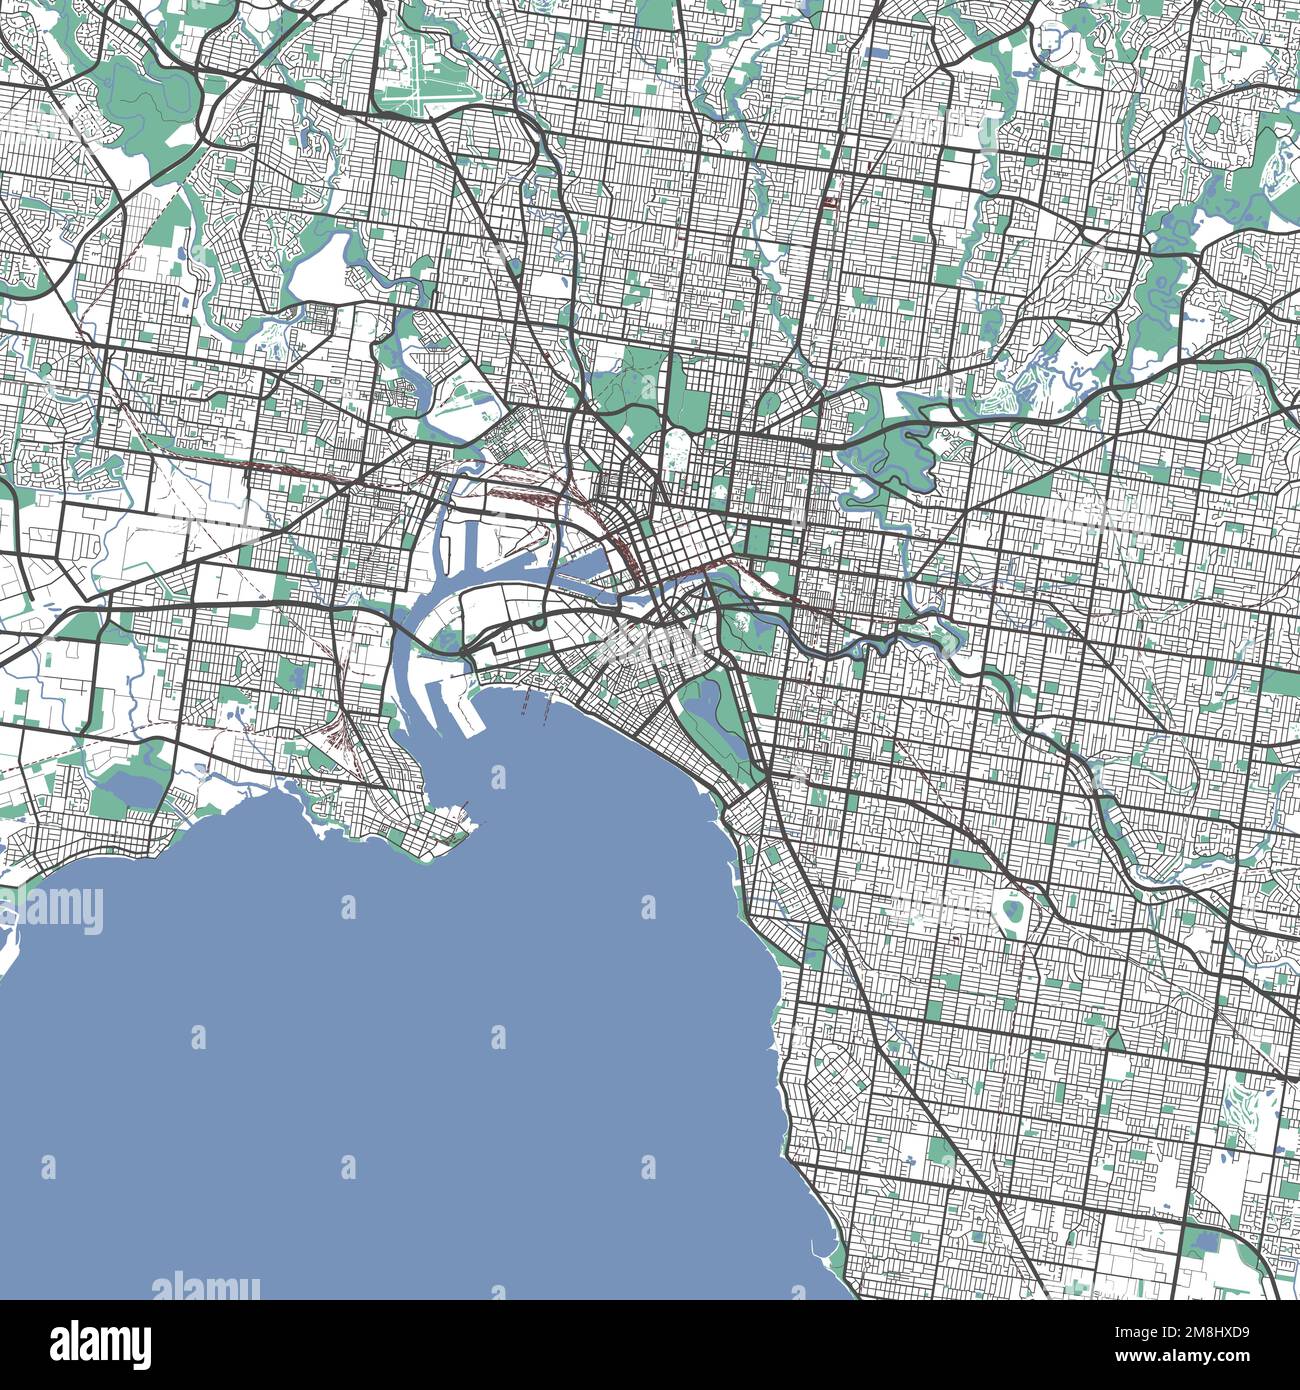 Stadtplan von Melbourne. Detaillierte Karte der Stadtverwaltung von Melbourne. Stadtpanorama. Unentgeltliche Vektordarstellung. Umrisskarte mit Autobahnen, st Stock Vektor